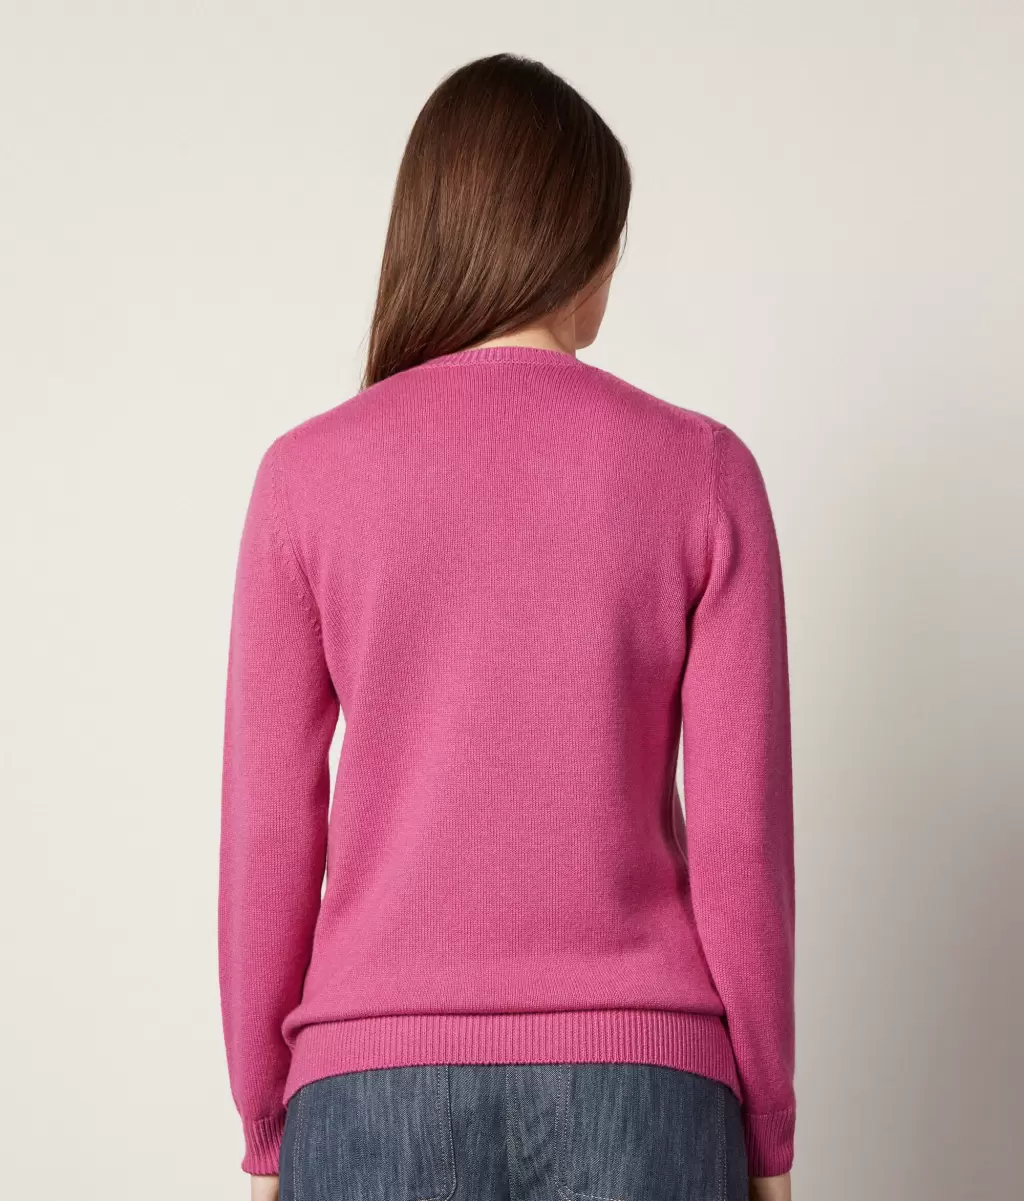 Pink Falconeri Swetry Z Okrągłym Dekoltem Pulower Z Kaszmiru Ultrasoft Kobieta - 2